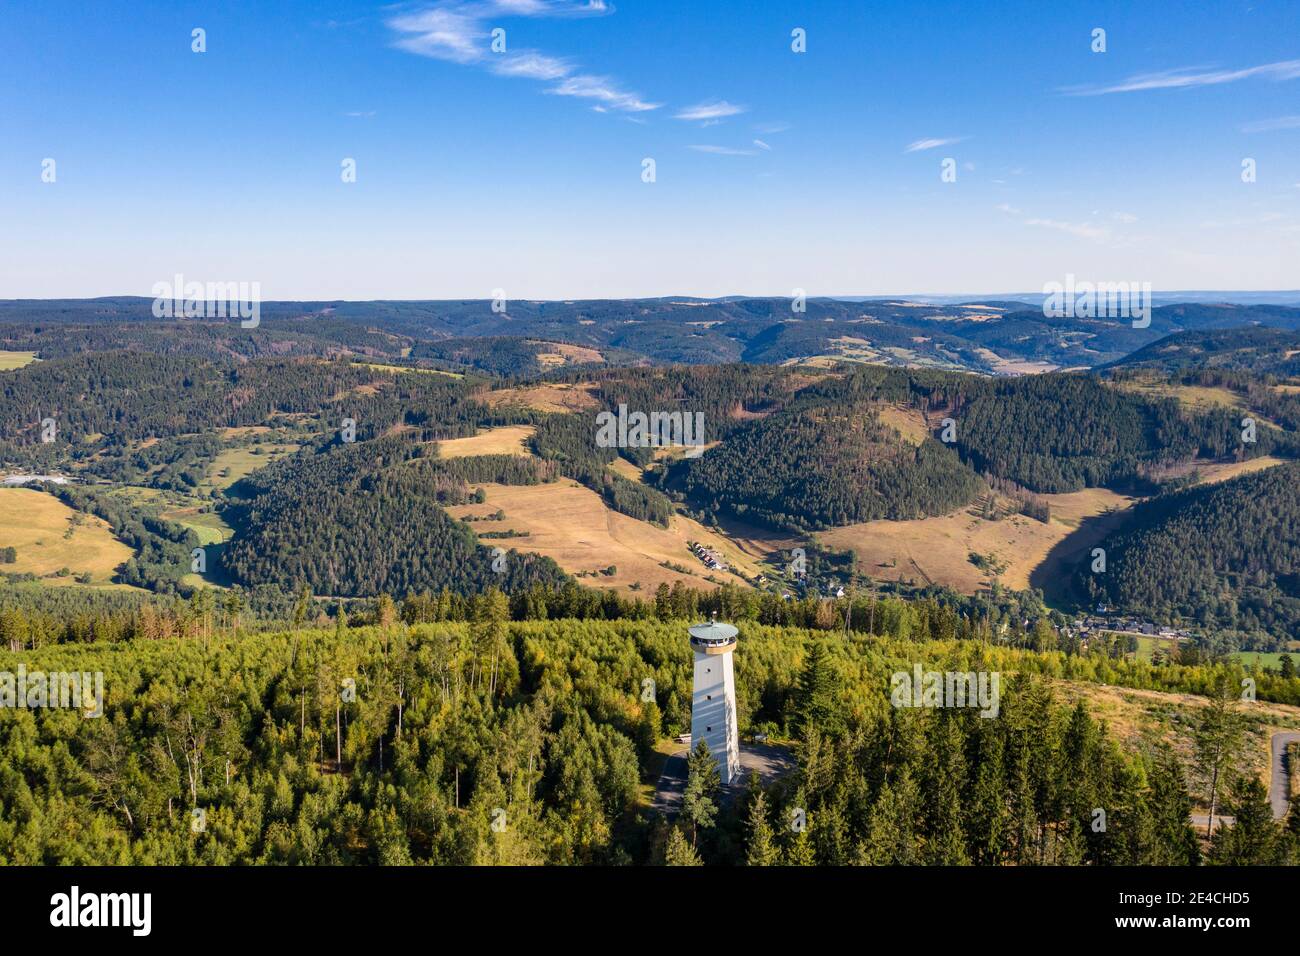 Alemania, Baviera, Lauenstein, Thüringer Warte, torre de observación, vista de la antigua RDA, montañas, bosque, vista aérea Foto de stock